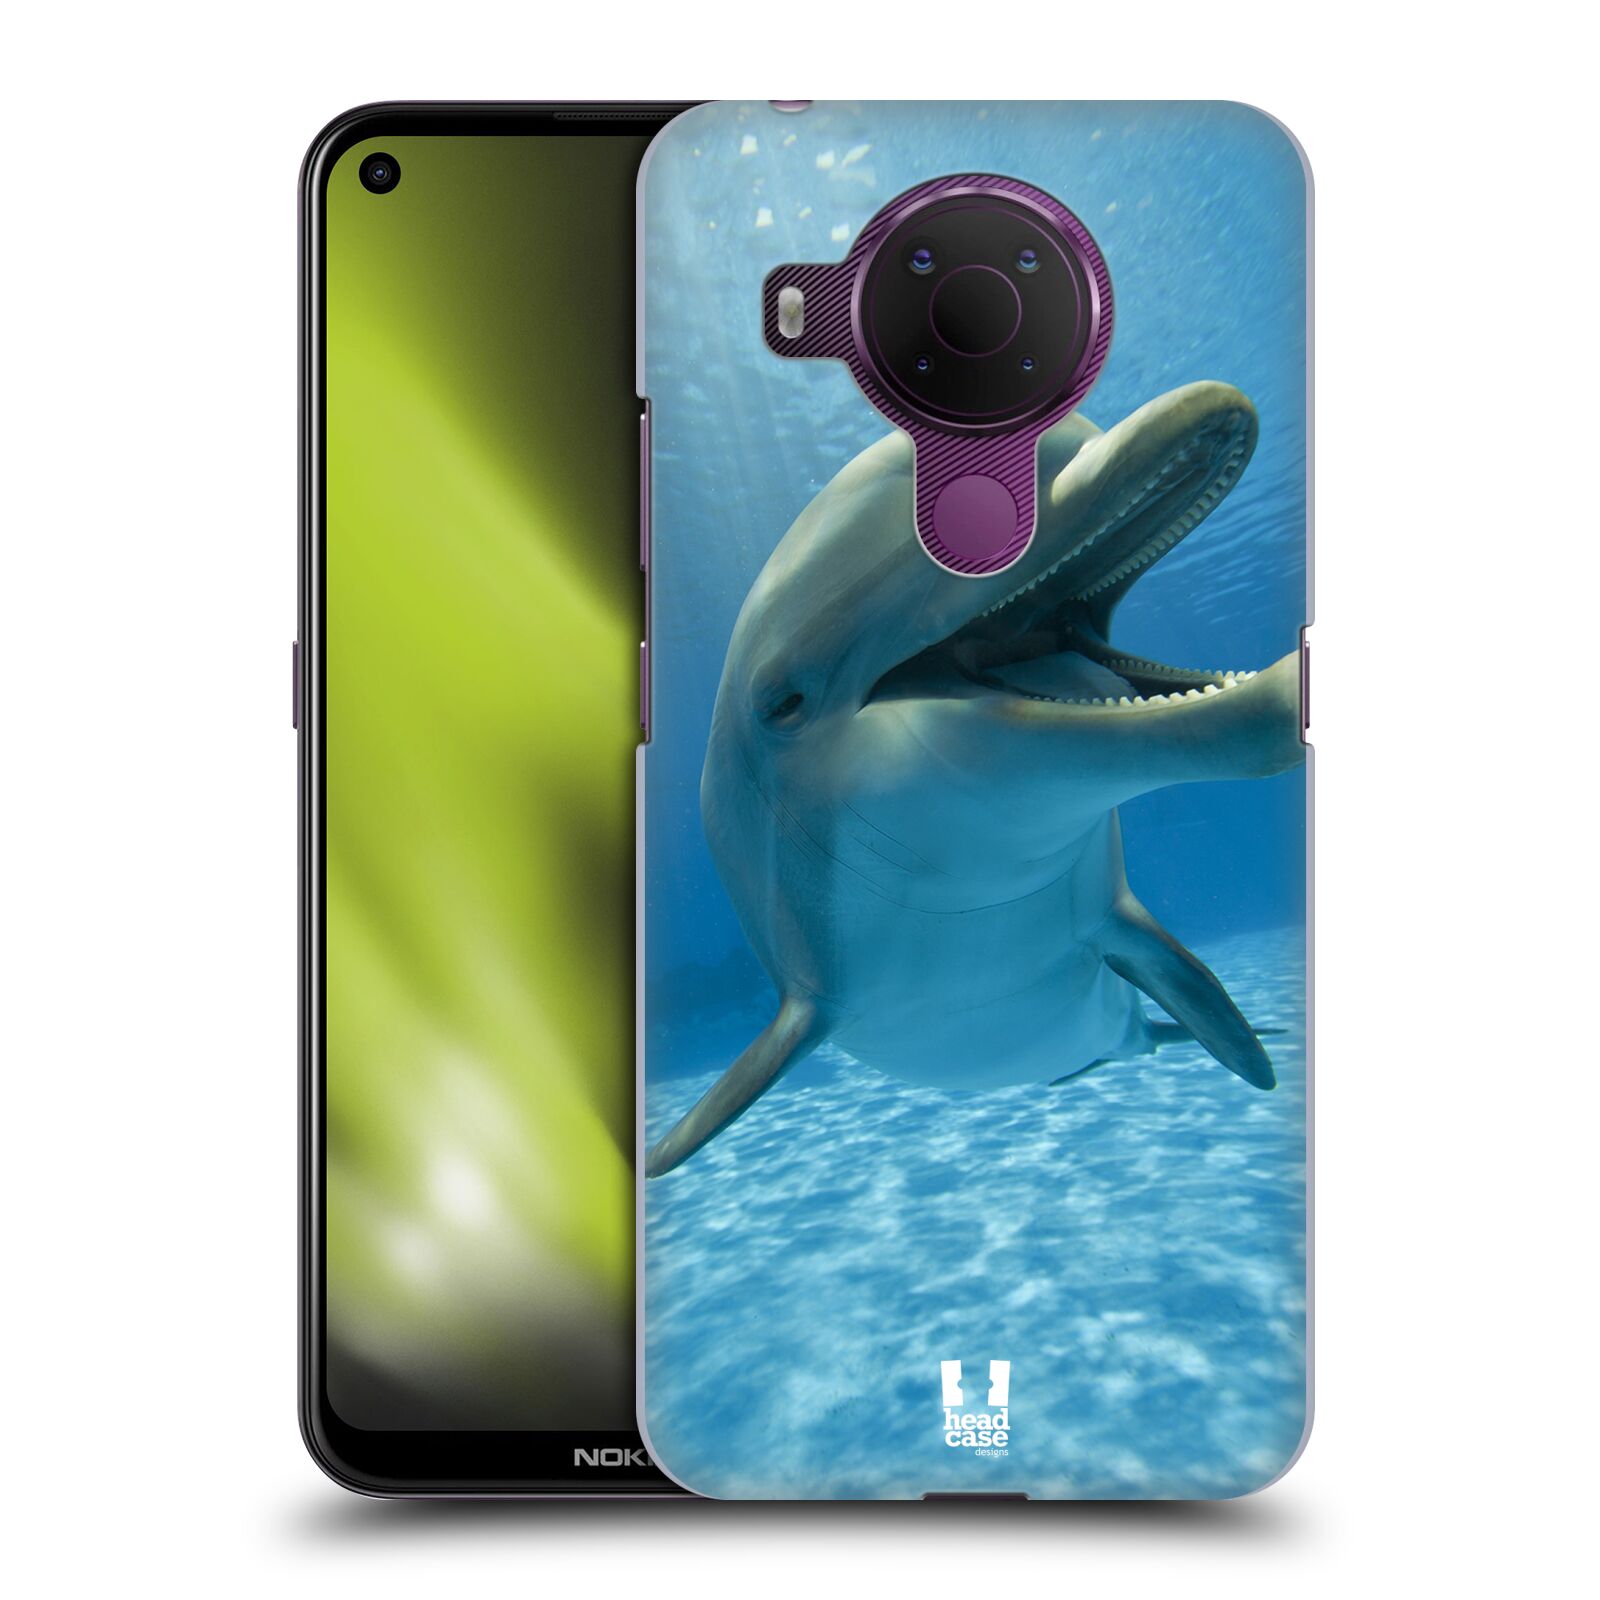 Zadní obal pro mobil Nokia 5.4 - HEAD CASE - Svět zvířat delfín v moři